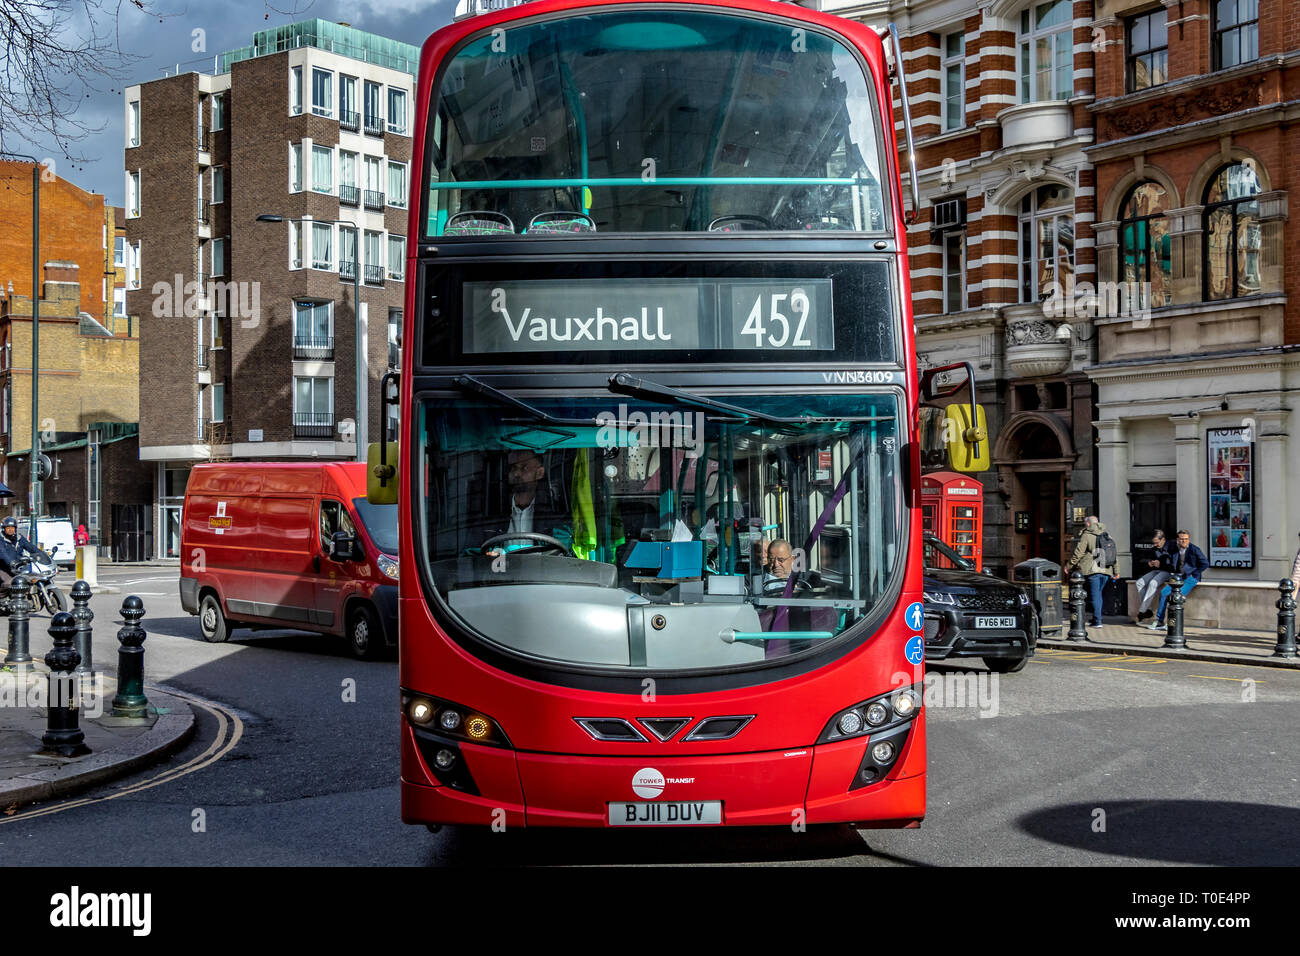 Un bus londonien rouge à impériale numéro 452 qui fait le tour de Sloane Square en route vers Vauxhall, Londres, Royaume-Uni Banque D'Images